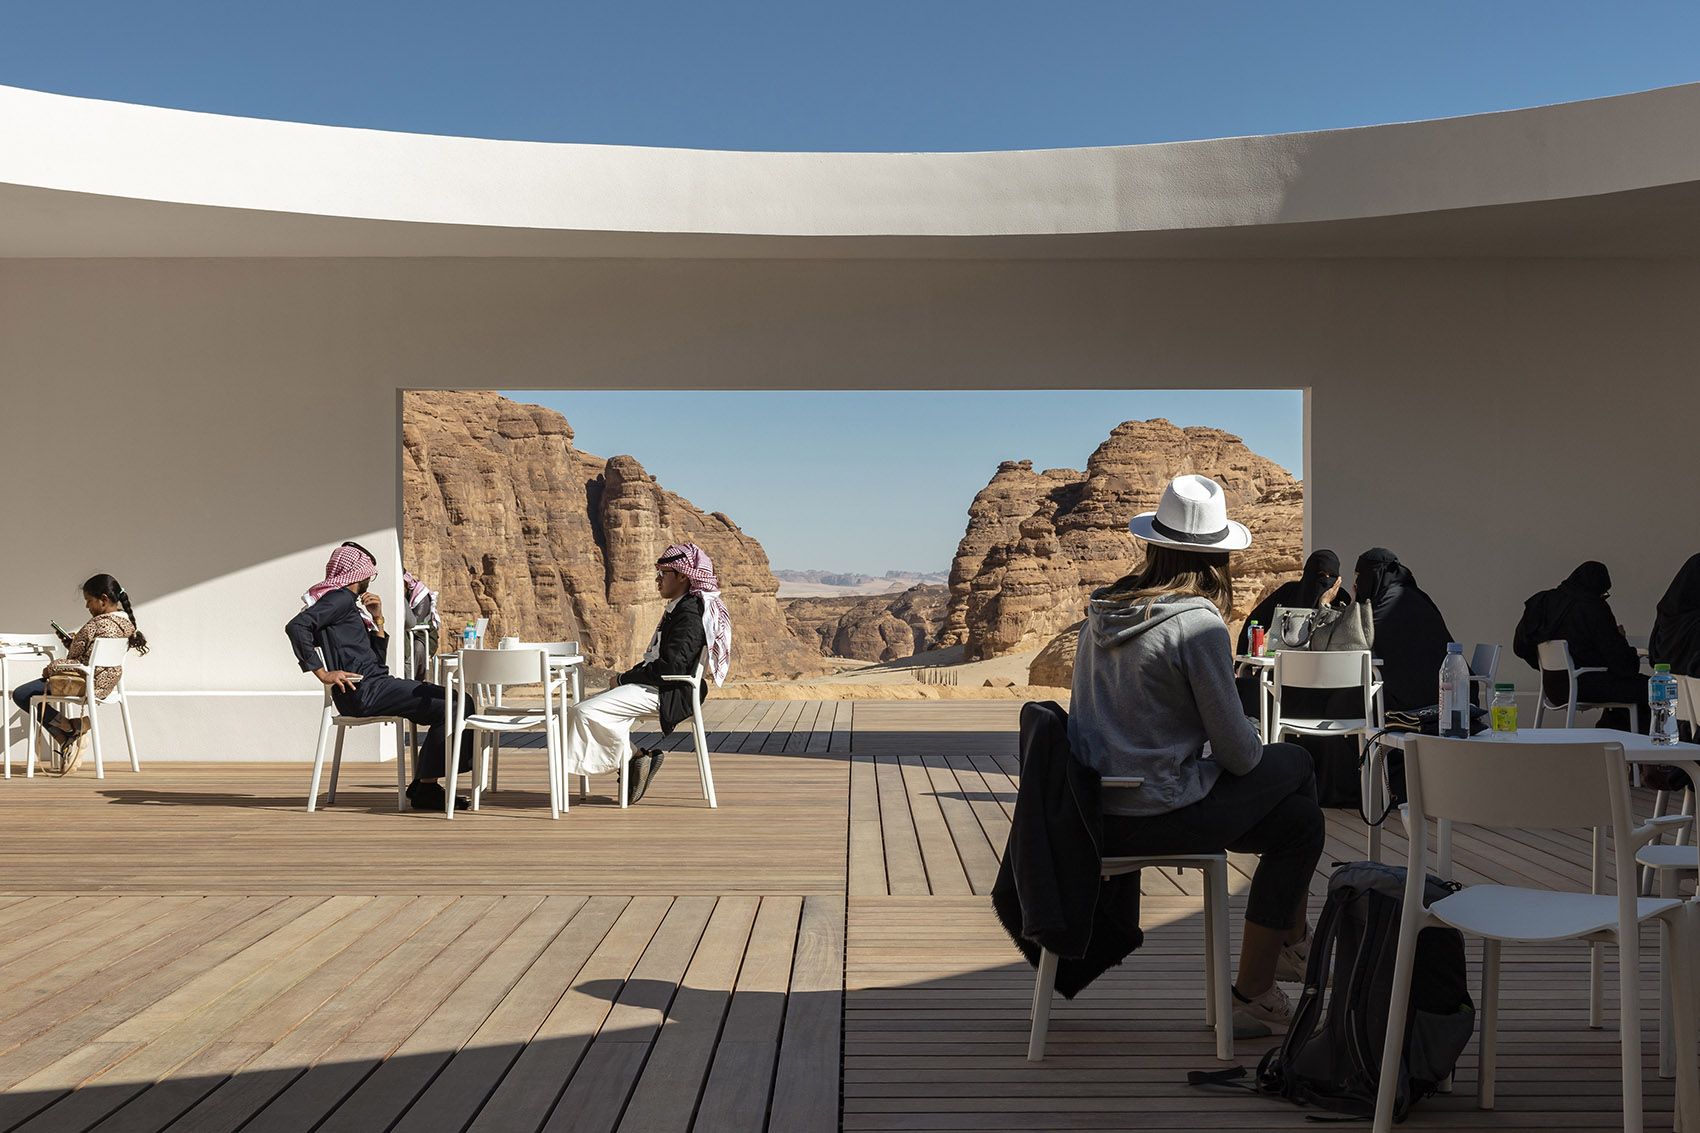 Desert X AlUla游客中心，沙特阿拉伯/无垠沙漠中的庇护所-14